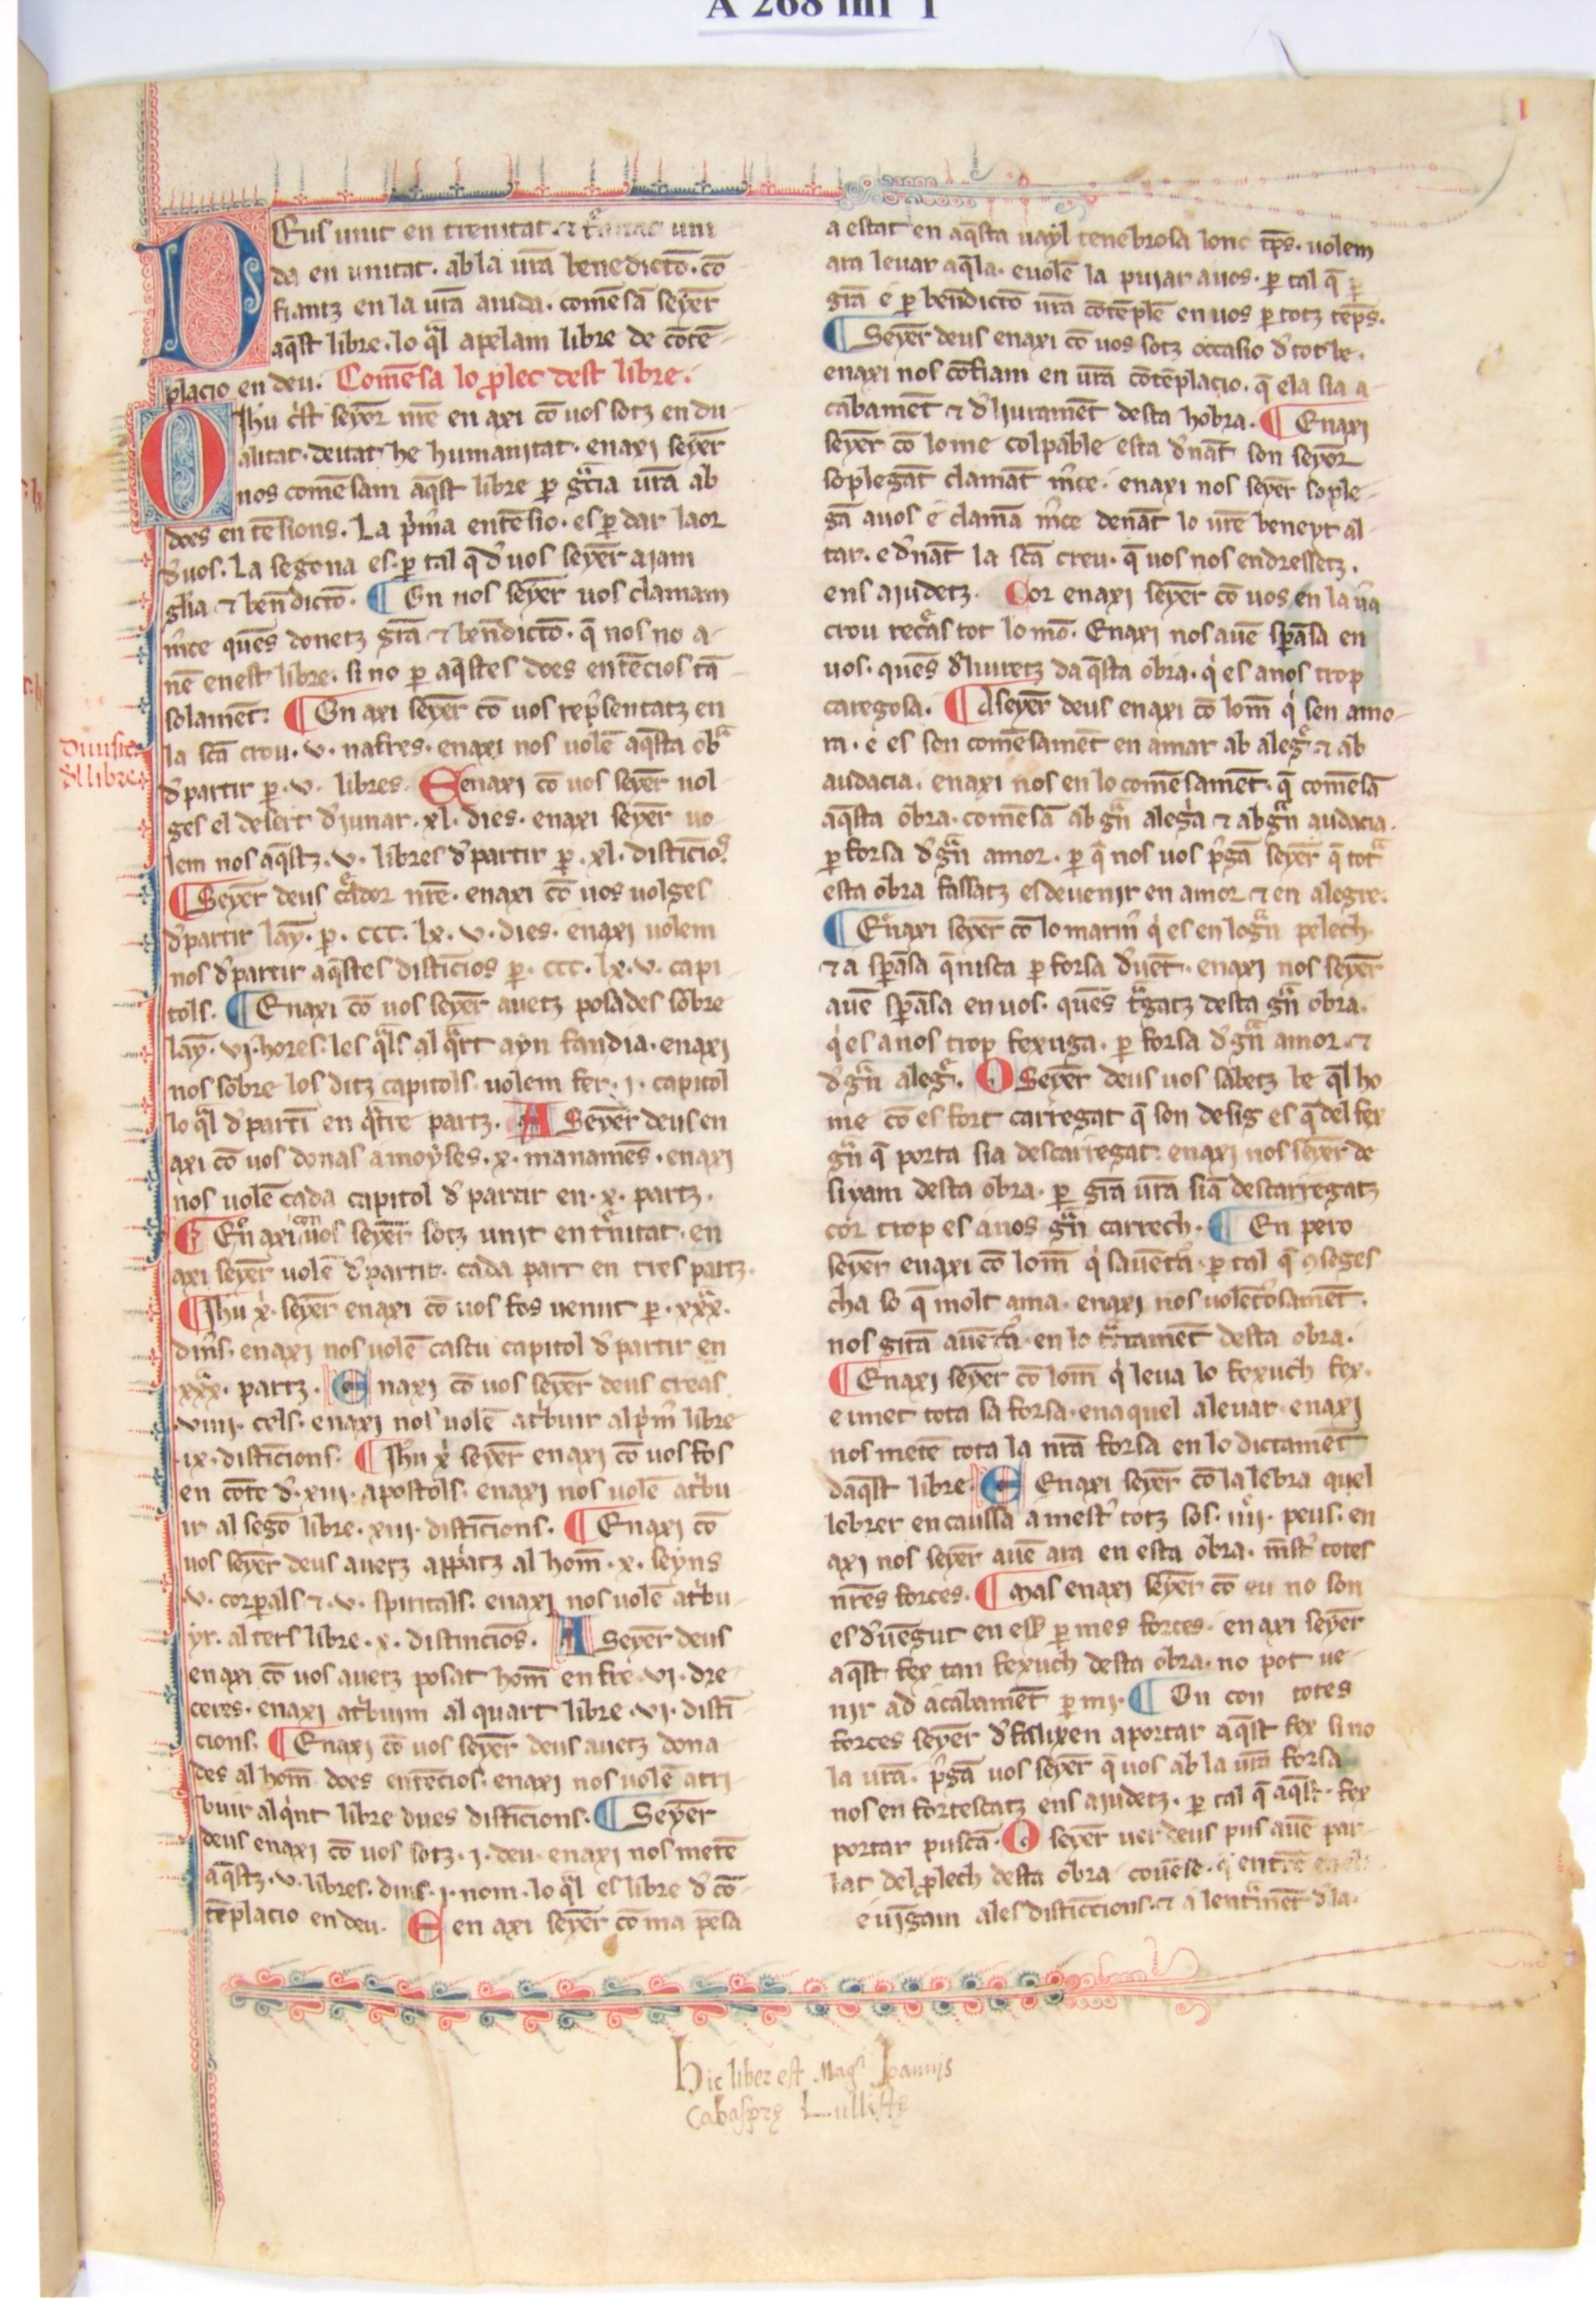 Manuscrit A 268 inf, Biblioteca Ambrosiana, Milà, f. 1